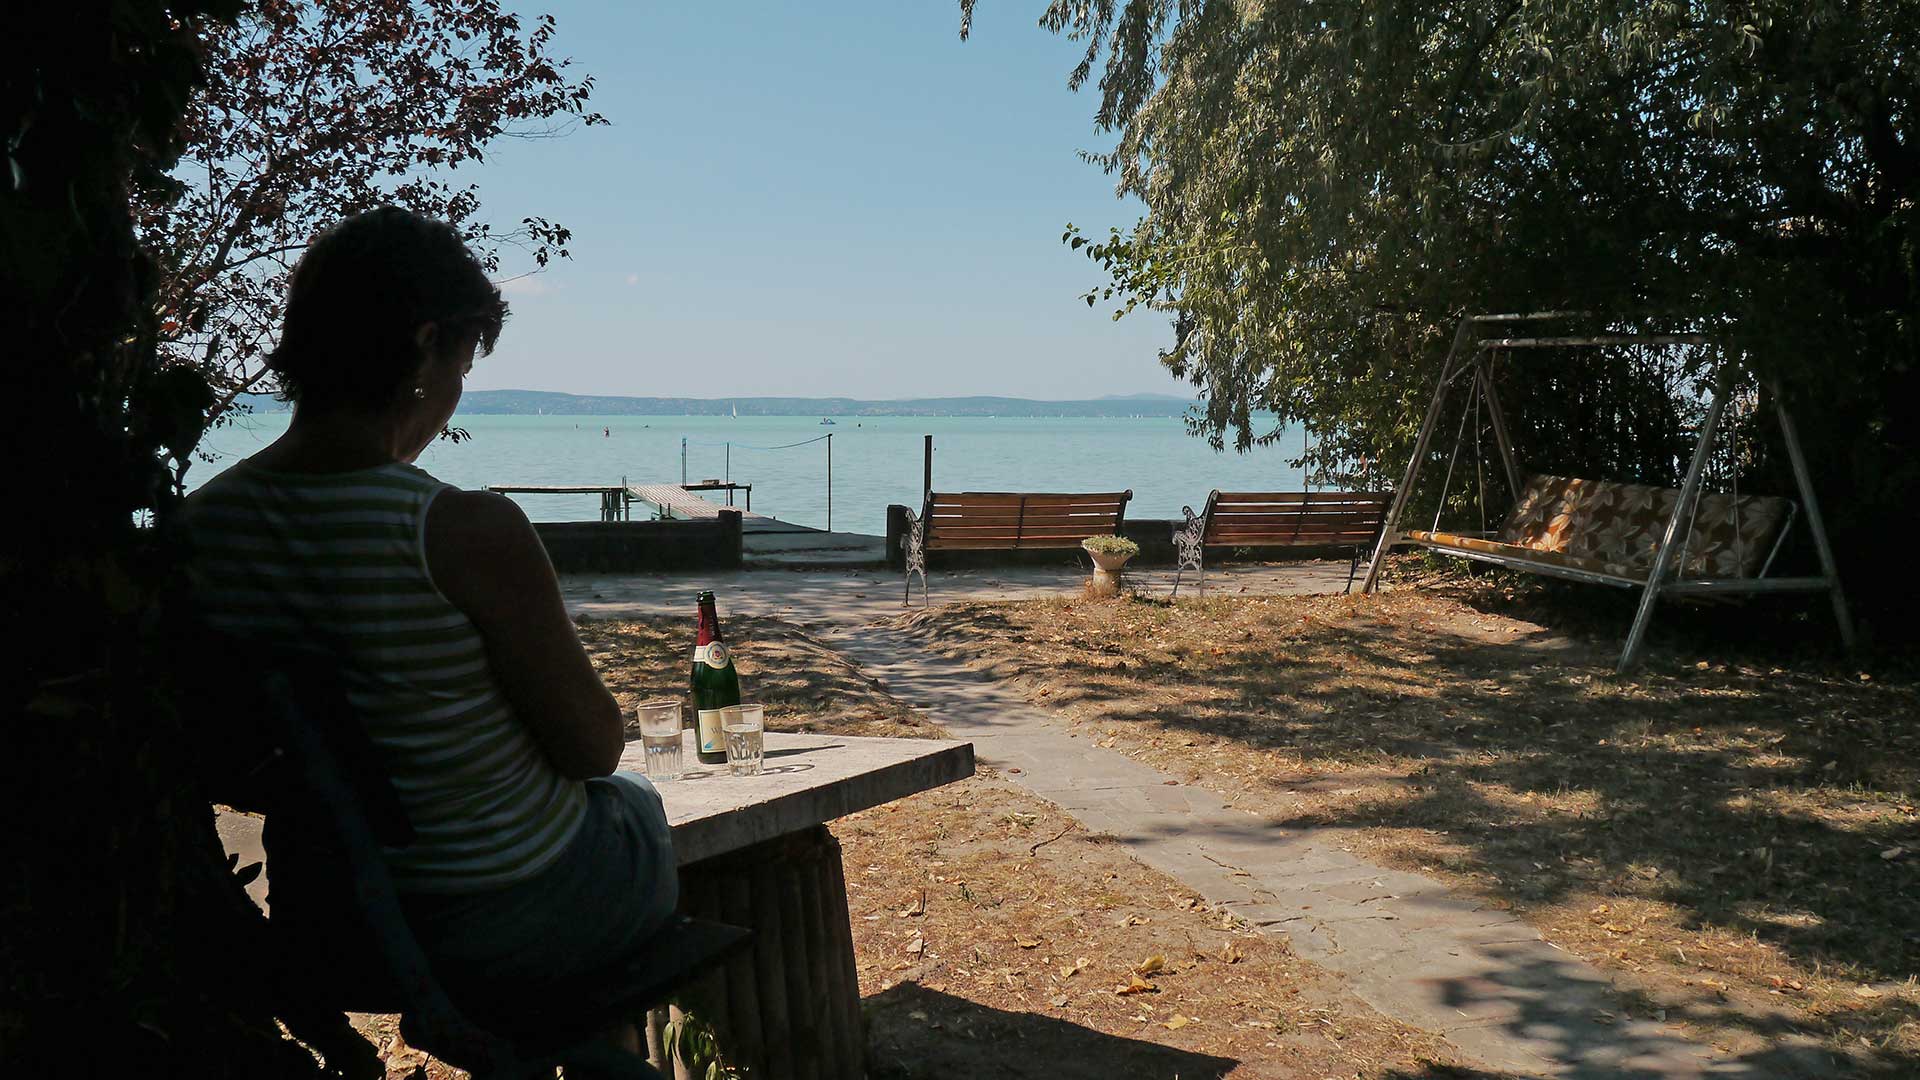 A képen, Lőkös Gáborné (Erika) látható egy közvetlen vízparti ingatlanban a Balaton partján, ahol, várja a Vevőt